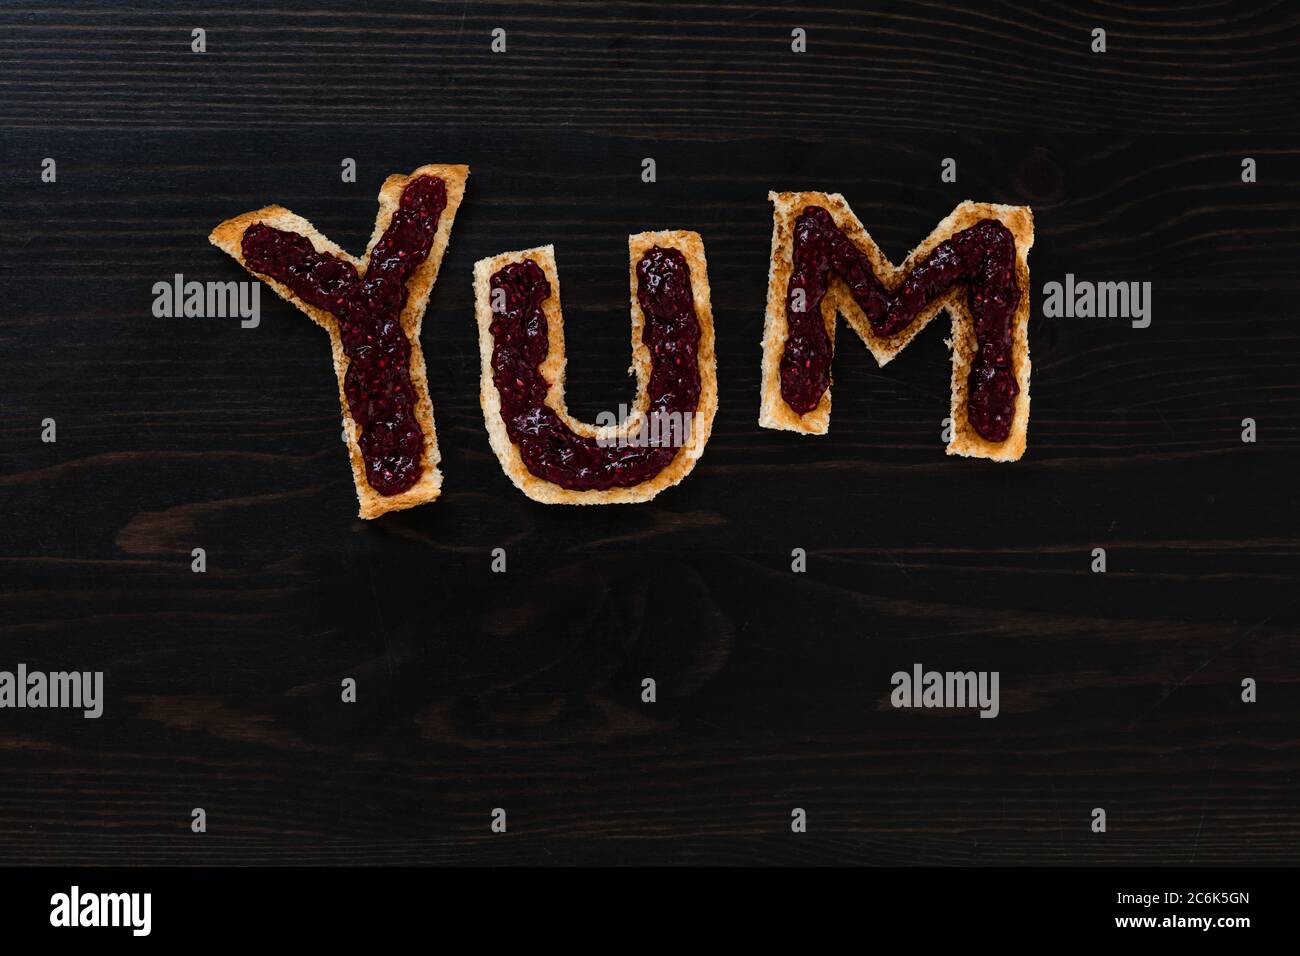 Pain blanc grillé coupé en lettres pour épeler le mot YUM avec de la confiture de framboise Banque D'Images